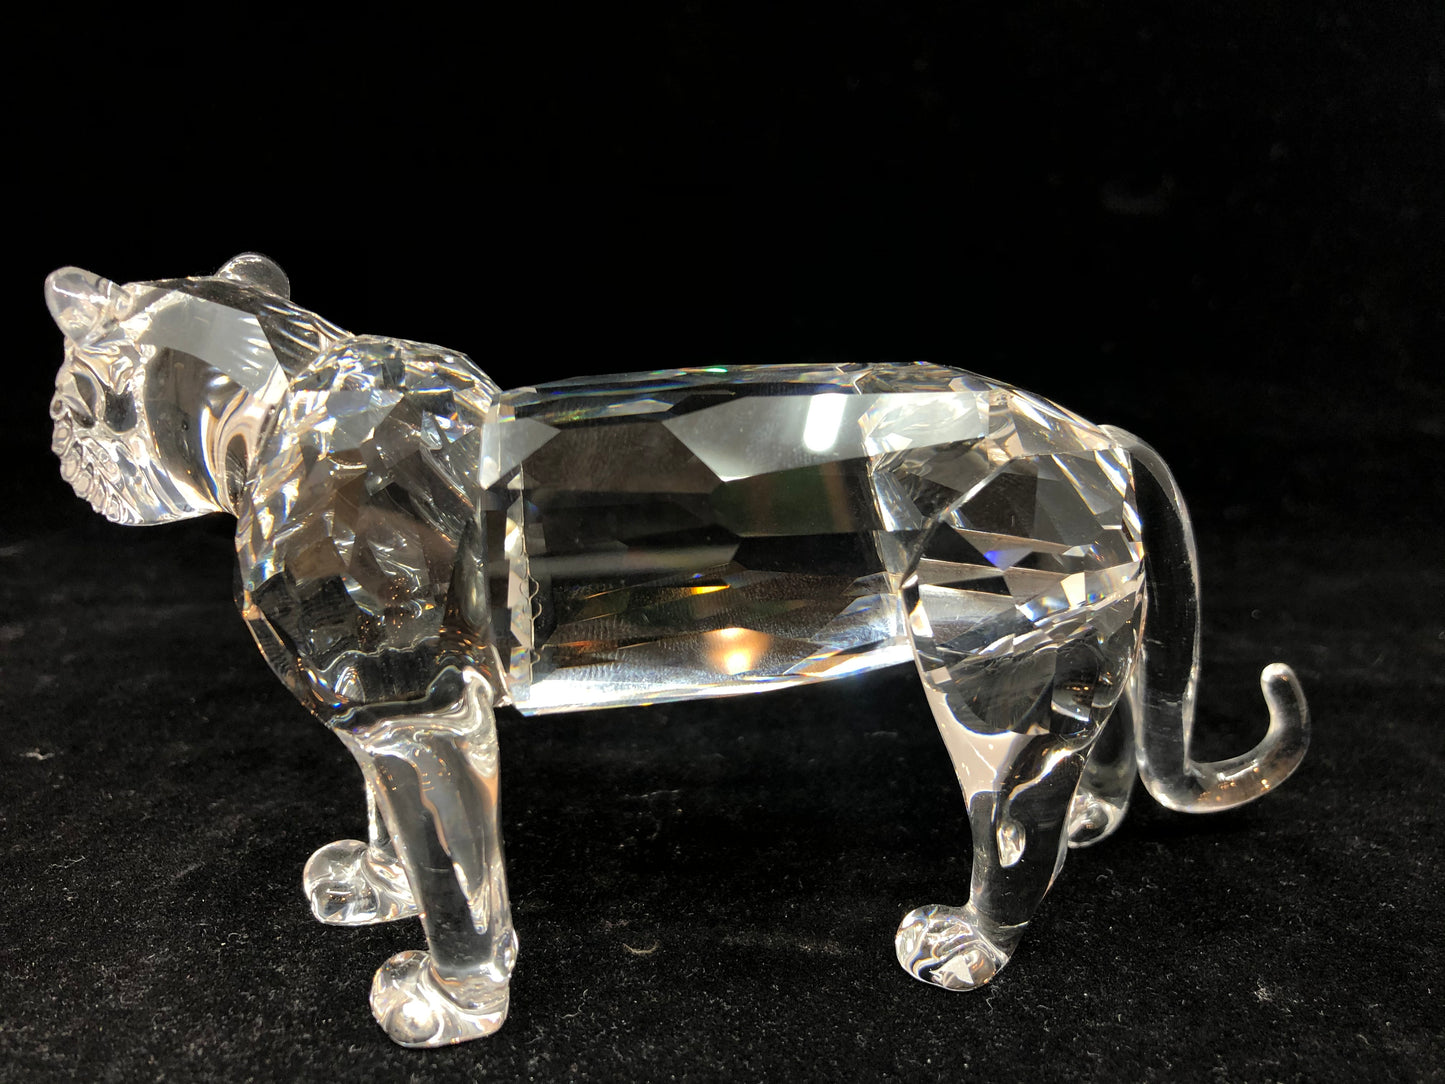 Swarovski "Endangered Species" Crystal Tiger Figurine